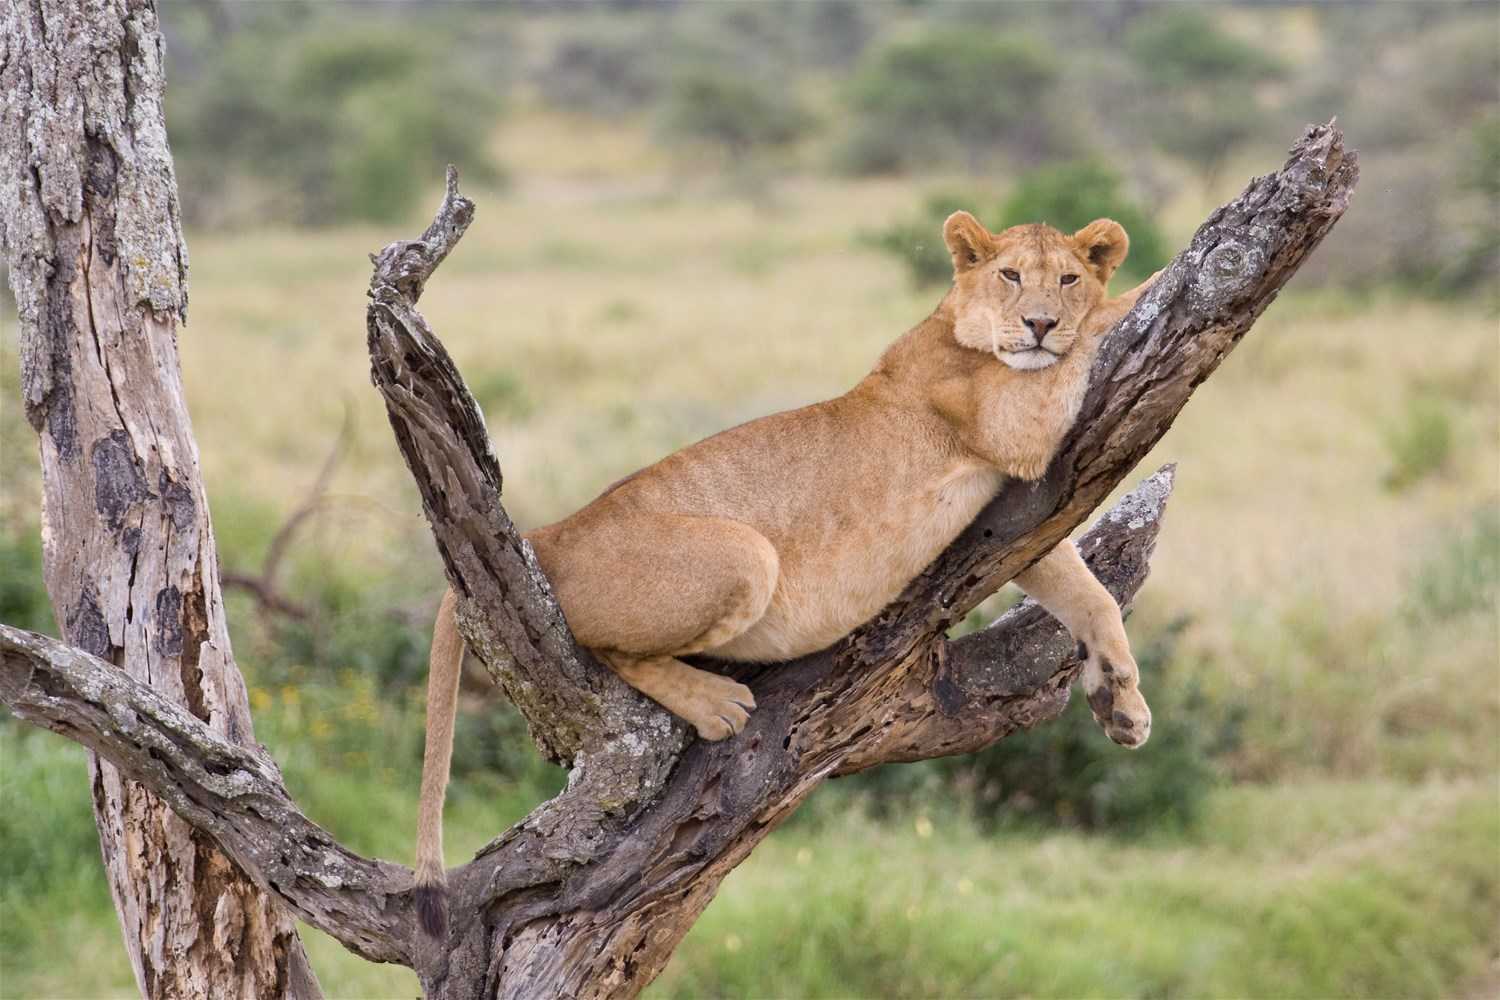 Tanzania-safari